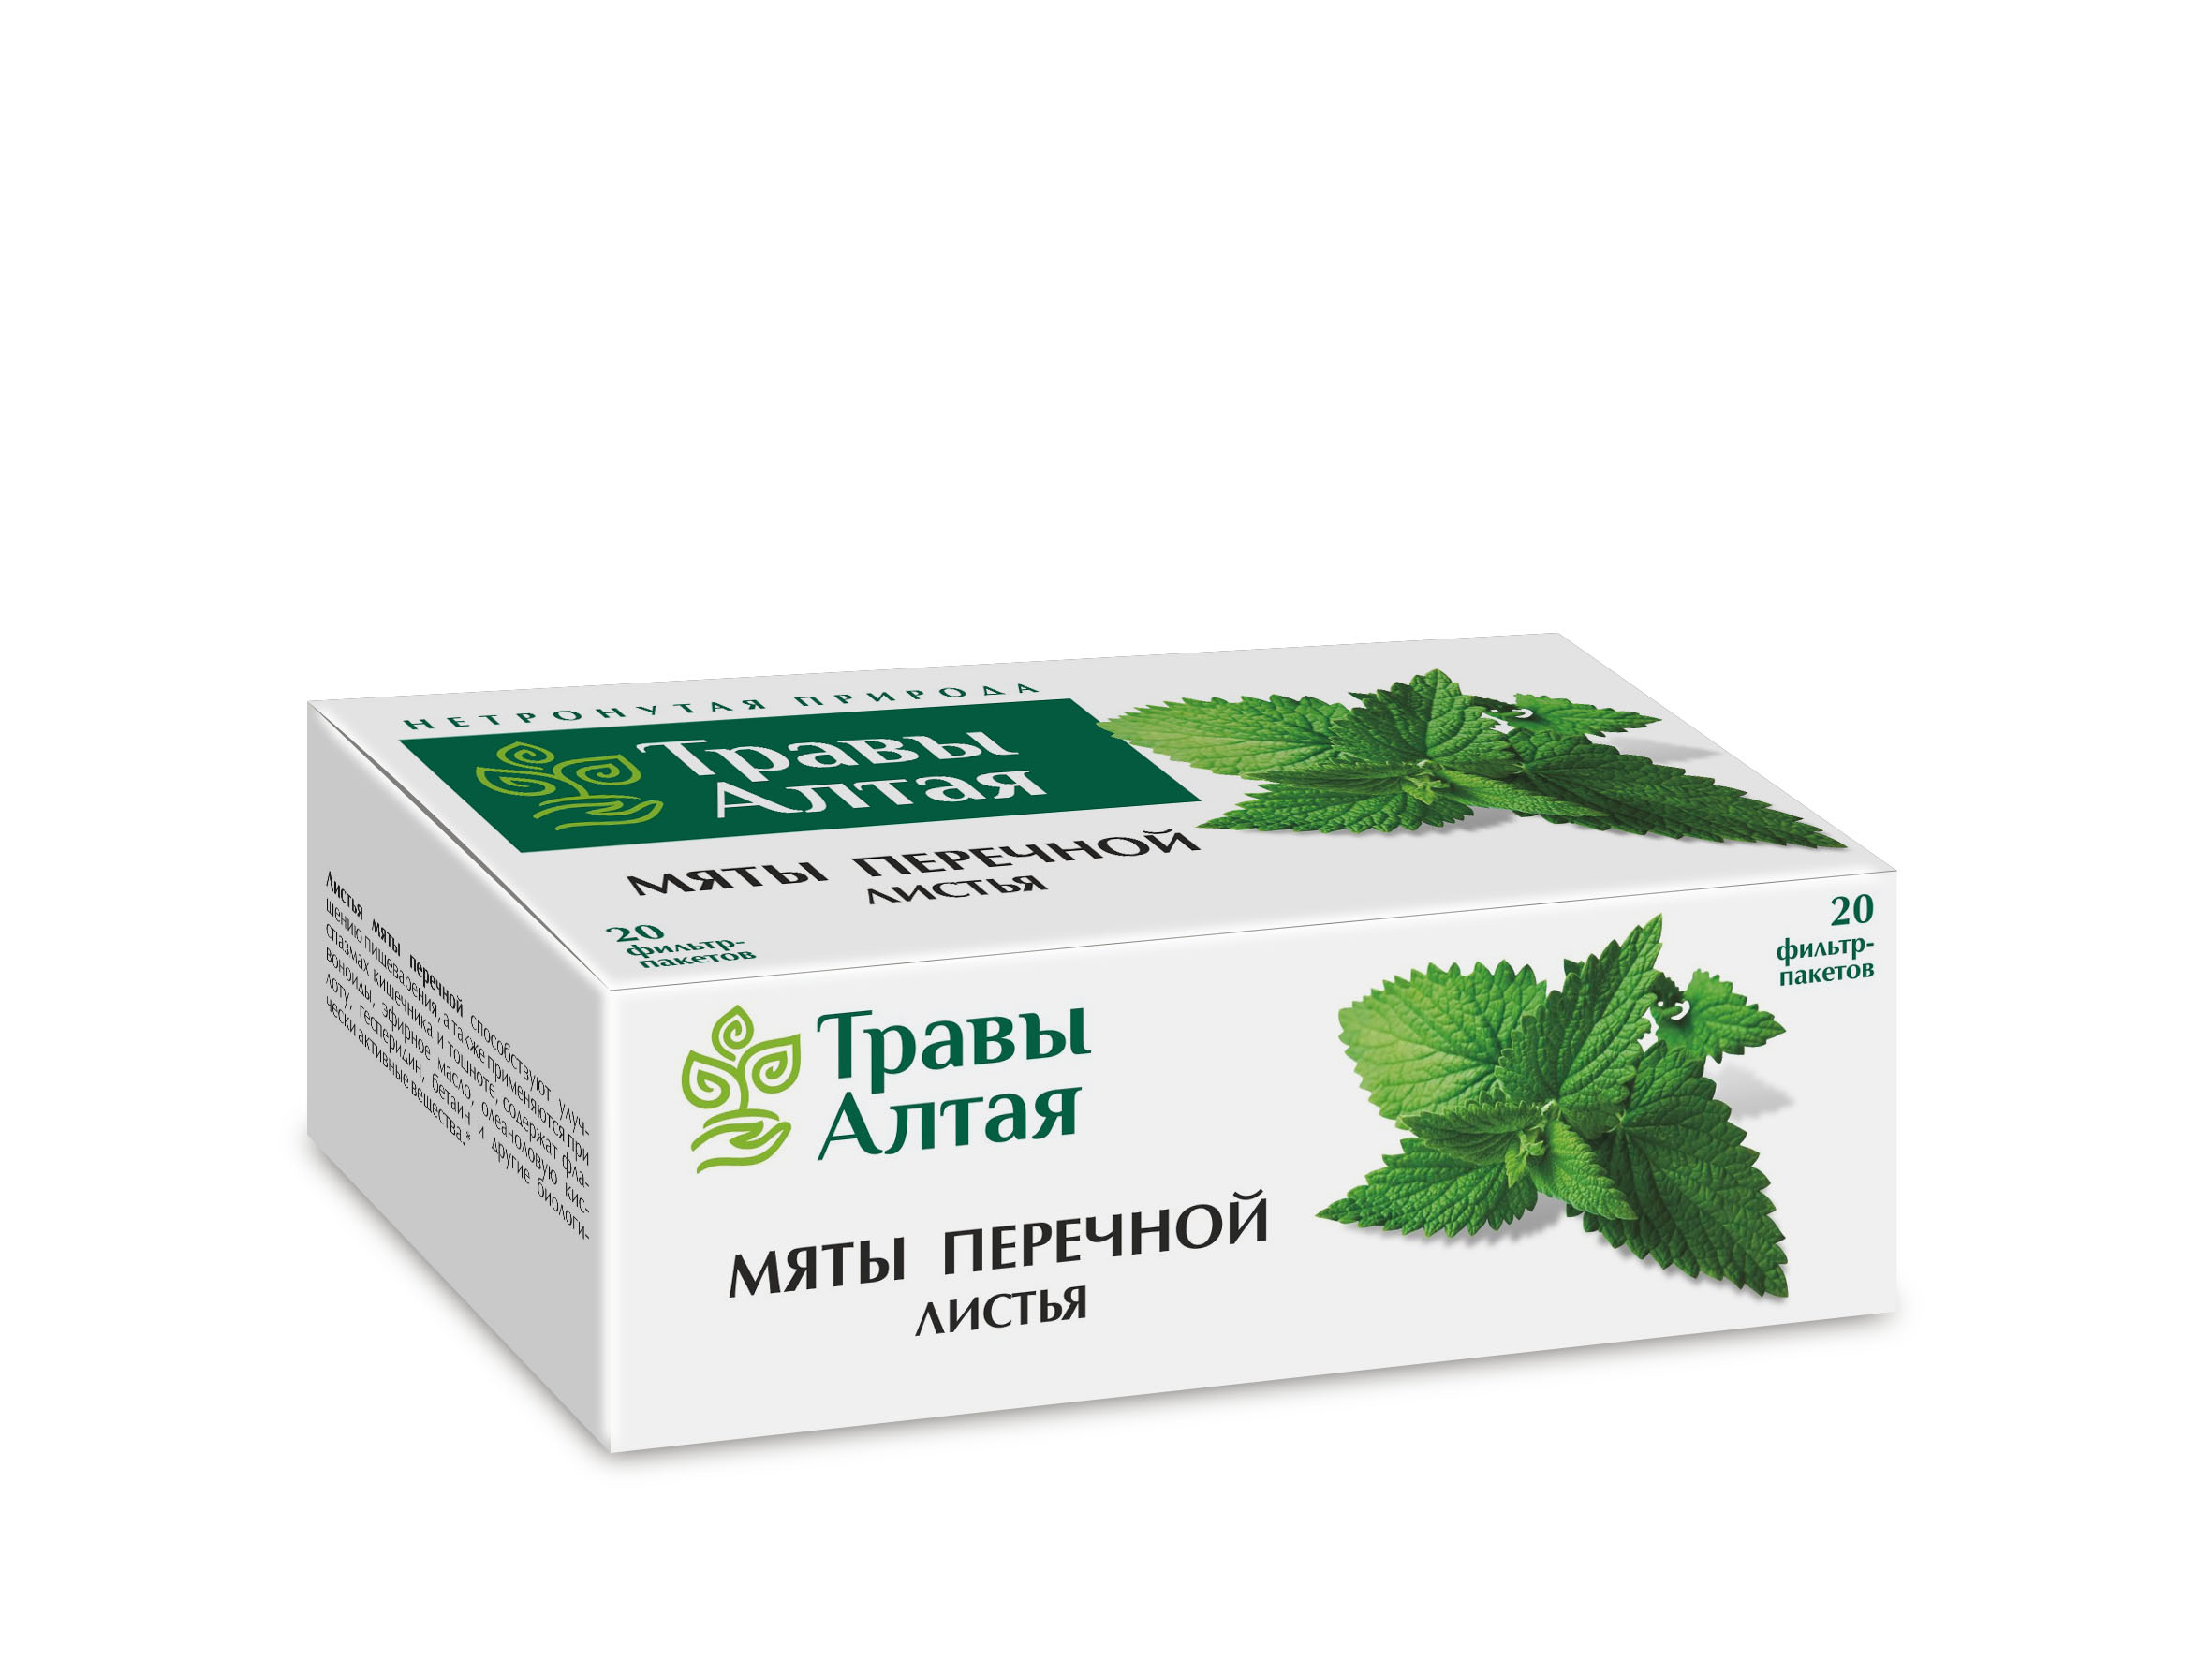 Мяты перечной листья серии Алтай, 1,5 г, 20 шт –  по цене 57 руб .